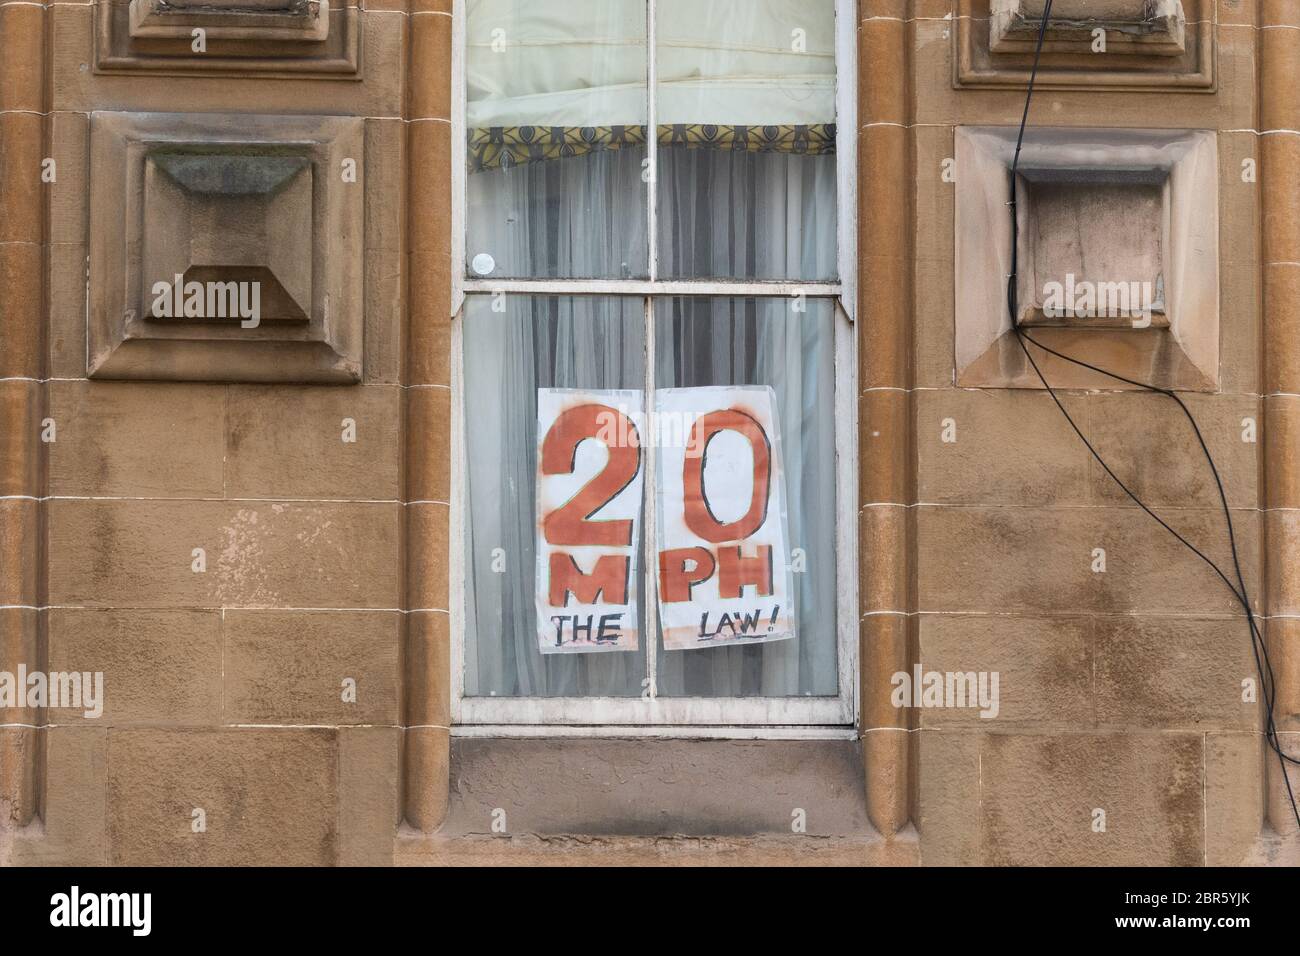 20 mph señal manuscrita en ventana de la tenencia, Glasgow, Escocia, Reino Unido Foto de stock